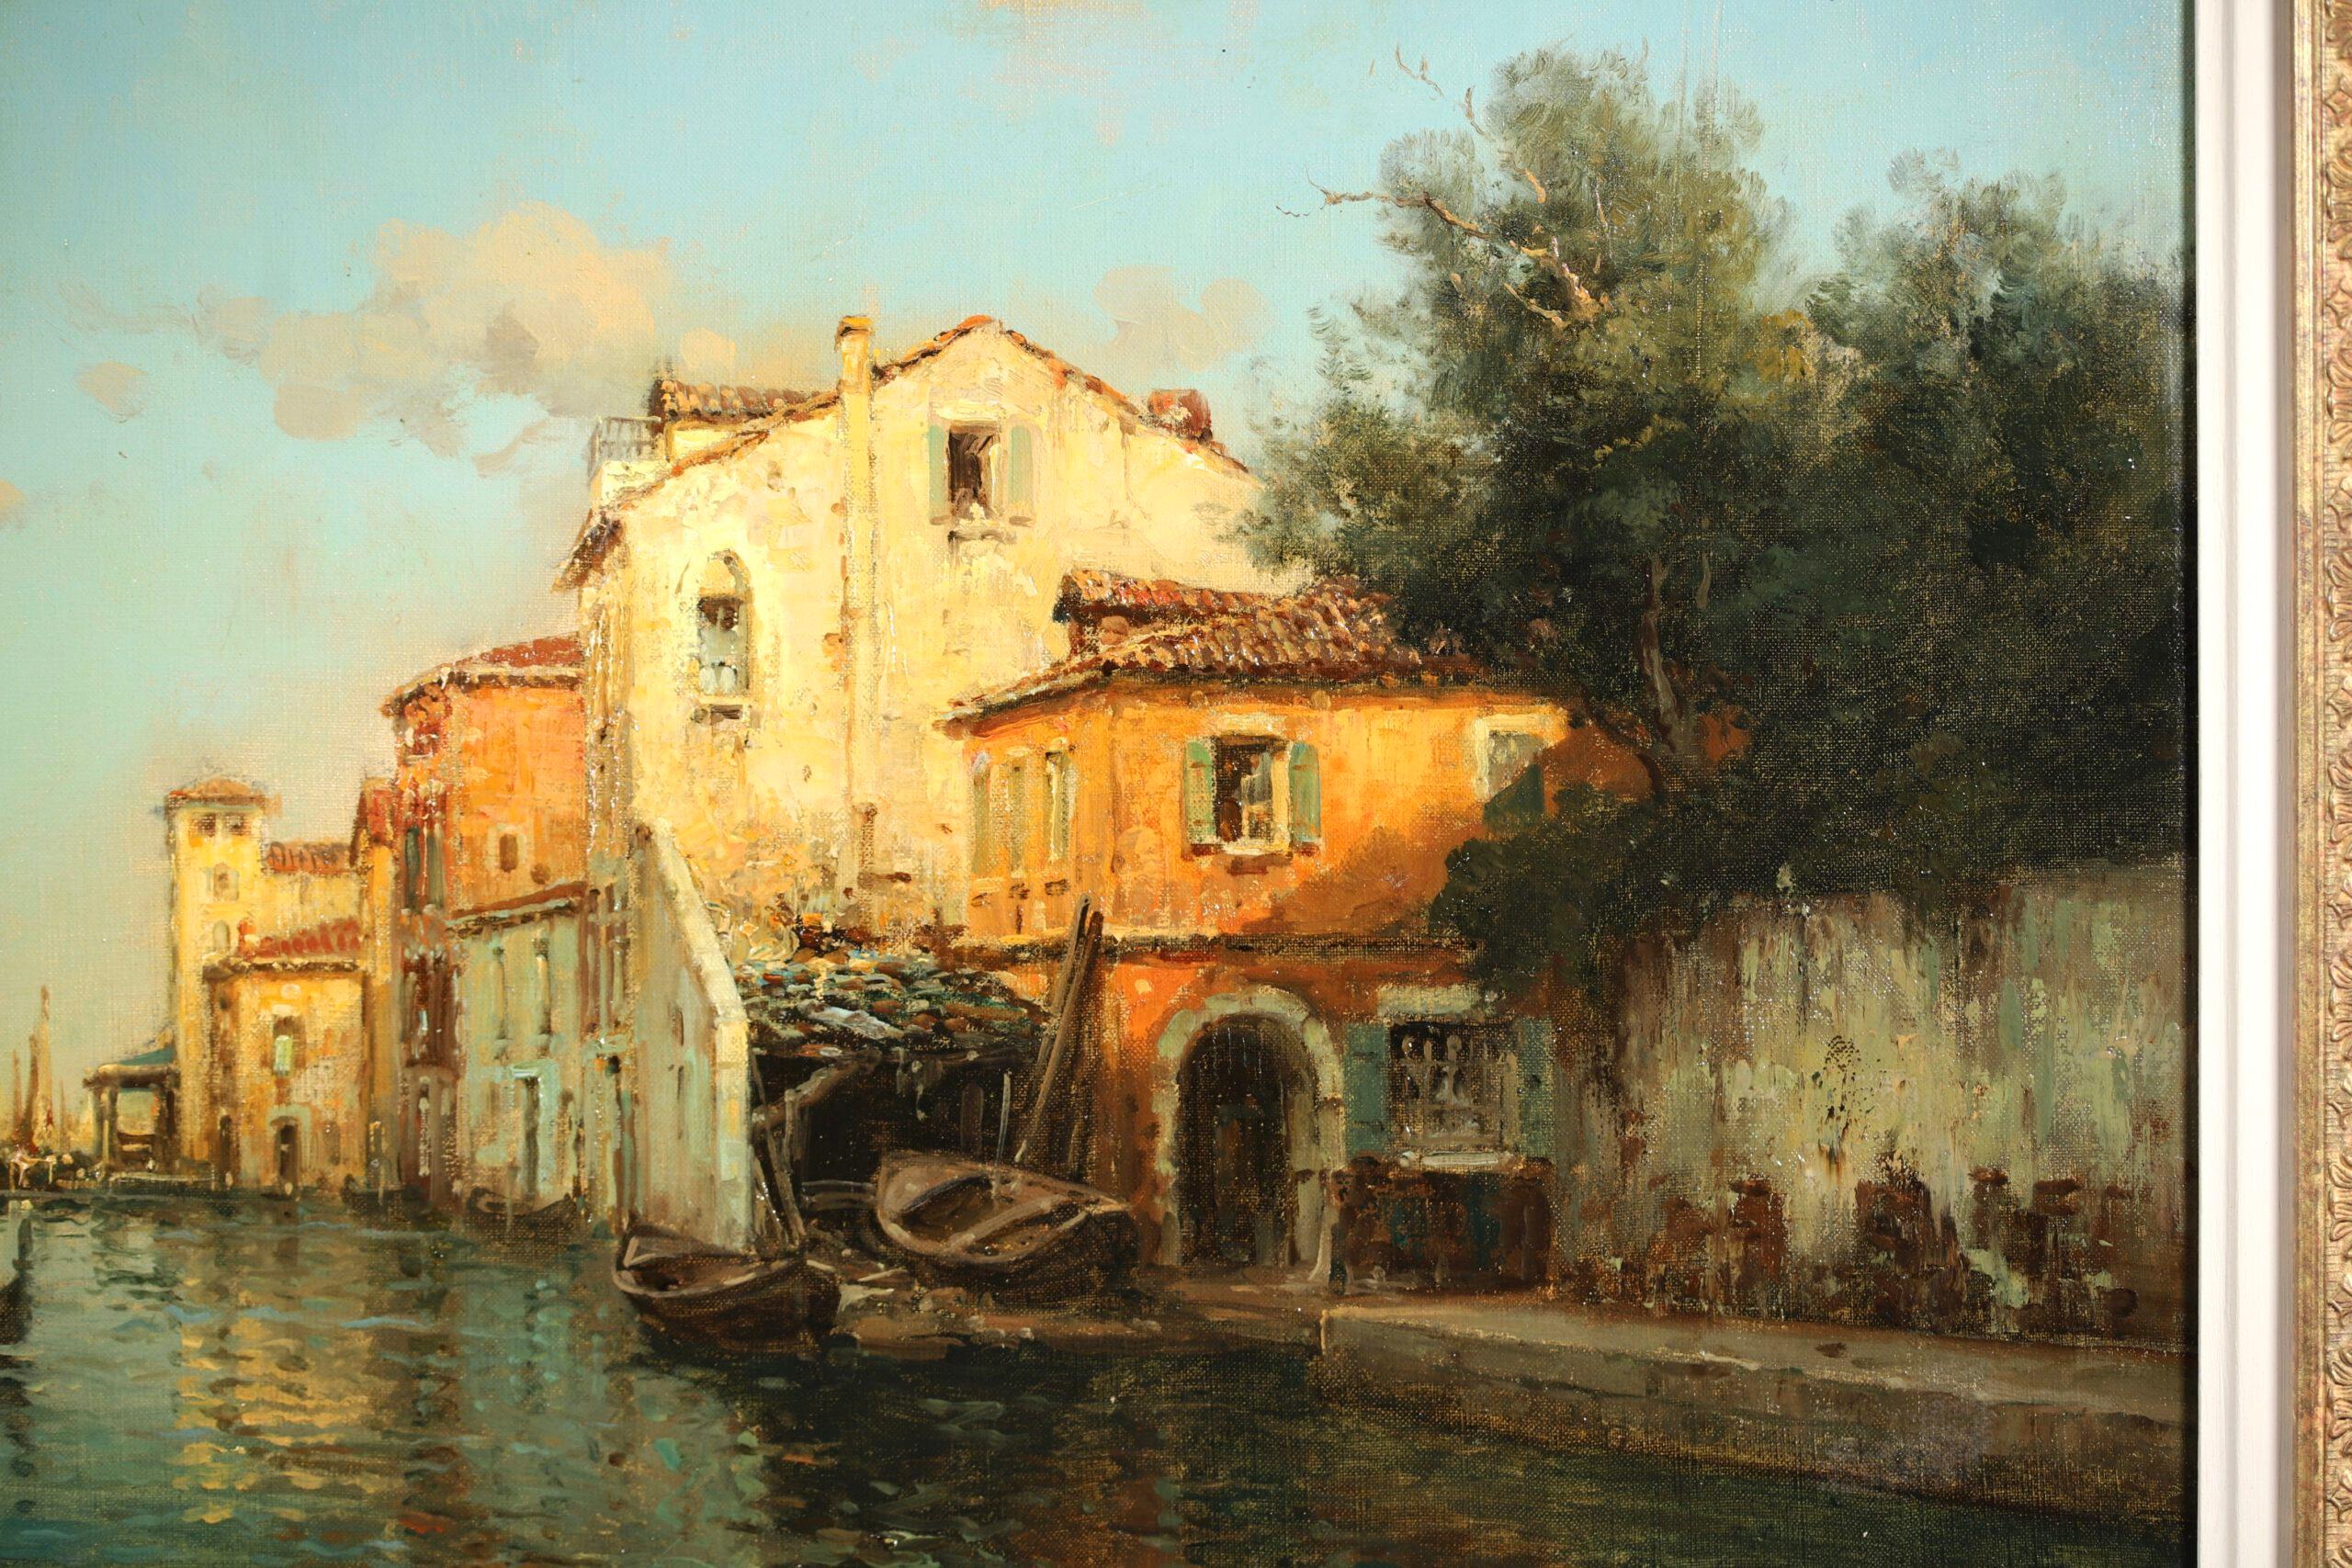 Signiertes impressionistisches Landschaftsöl auf Leinwand um 1920 von dem französischen Maler Antoine Bouvard Snr. Das Werk zeigt eine Figur, die auf einer Gondel neben den Gebäuden rudert, die den Kanal im Hafen von Venedig säumen. Das letzte Licht